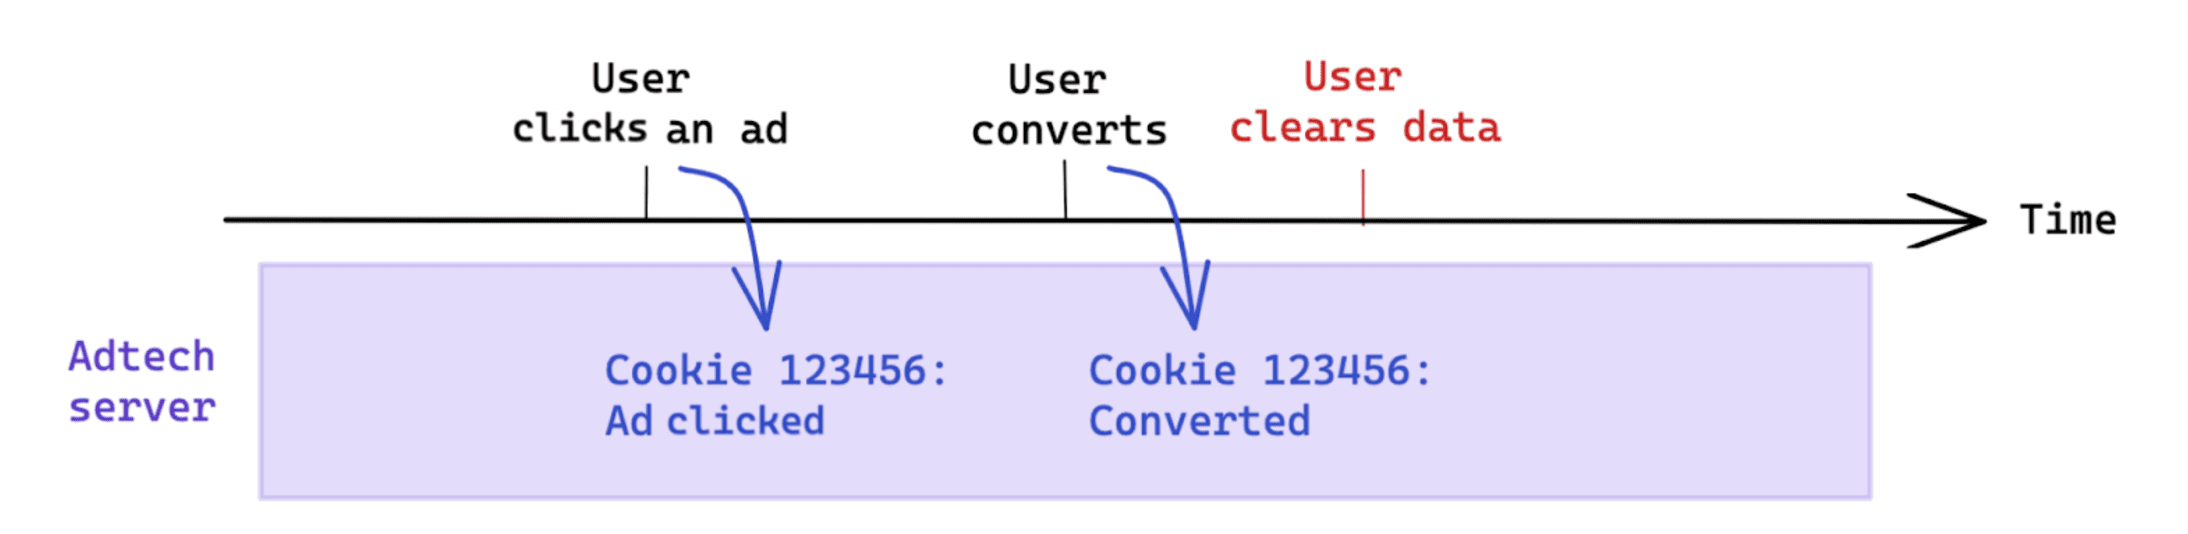 轉換後使用者啟動的資料清除作業，不會影響以 Cookie 為基礎的評估。